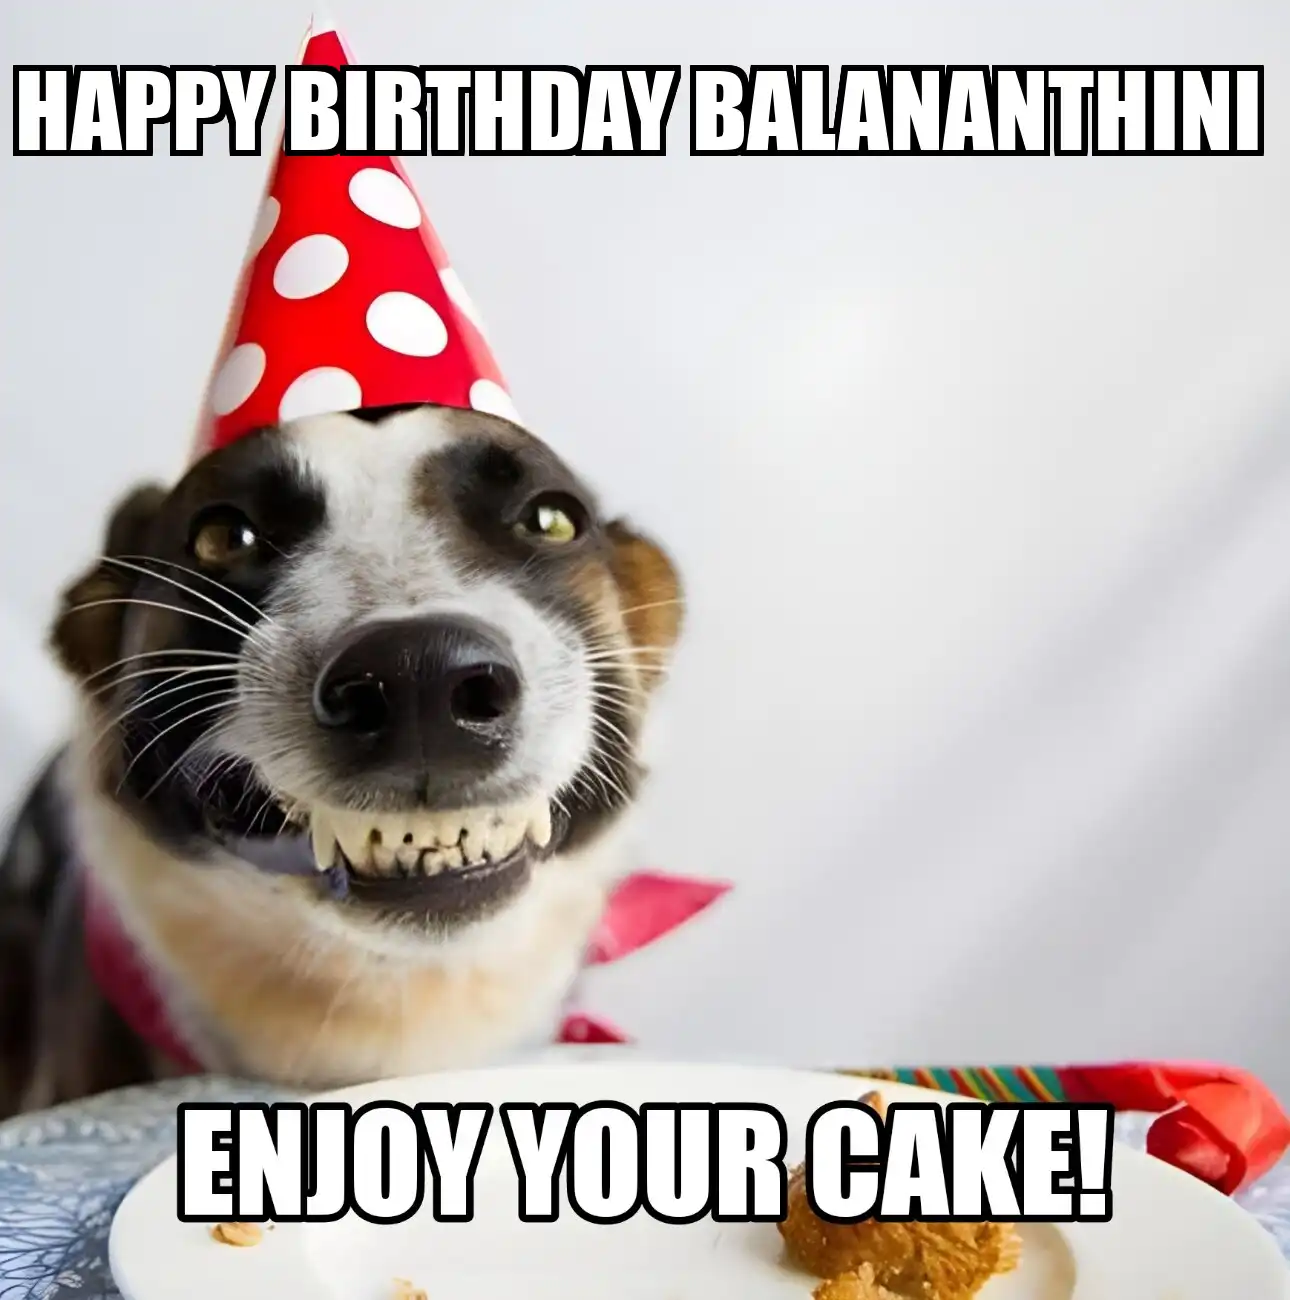 Happy Birthday Balananthini Enjoy Your Cake Dog Meme